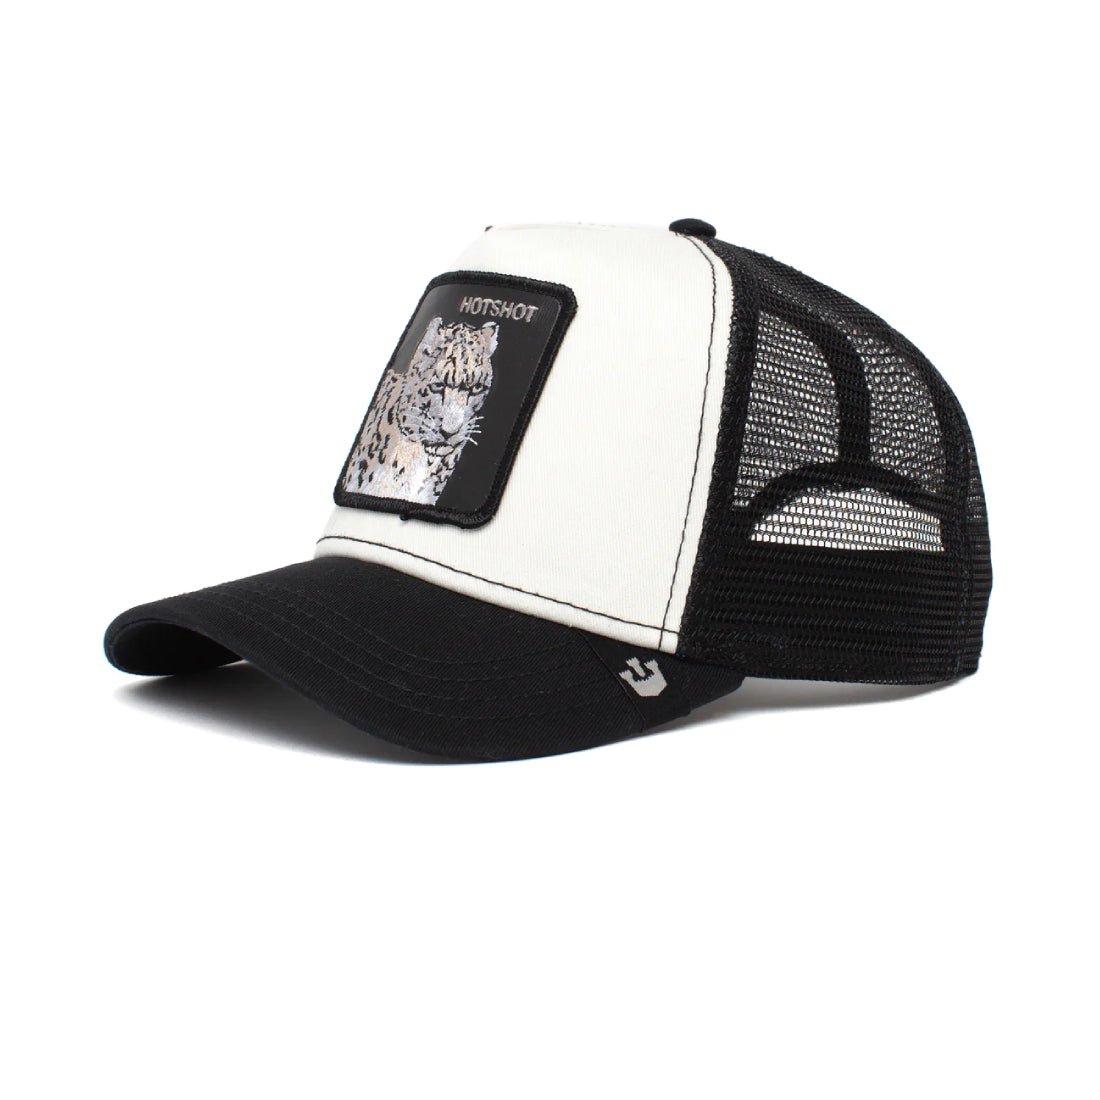 Queue Caps Hotshot Cap - Black & White - قبعة - Store 974 | ستور ٩٧٤